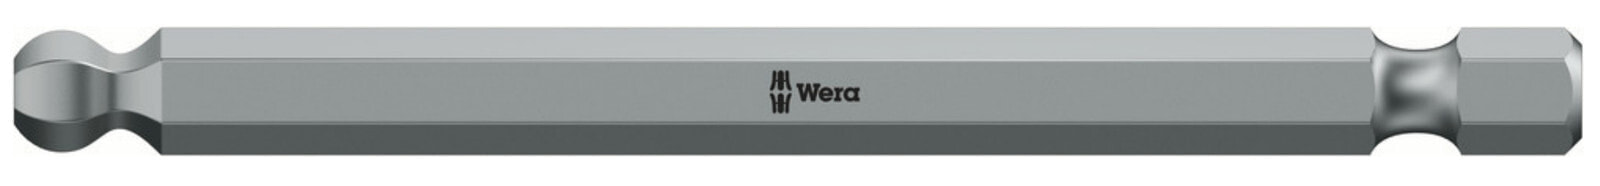 Wera 05059683001 - Hex (metric) - 6 mm - 89 mm - 23 g - Czech Republic